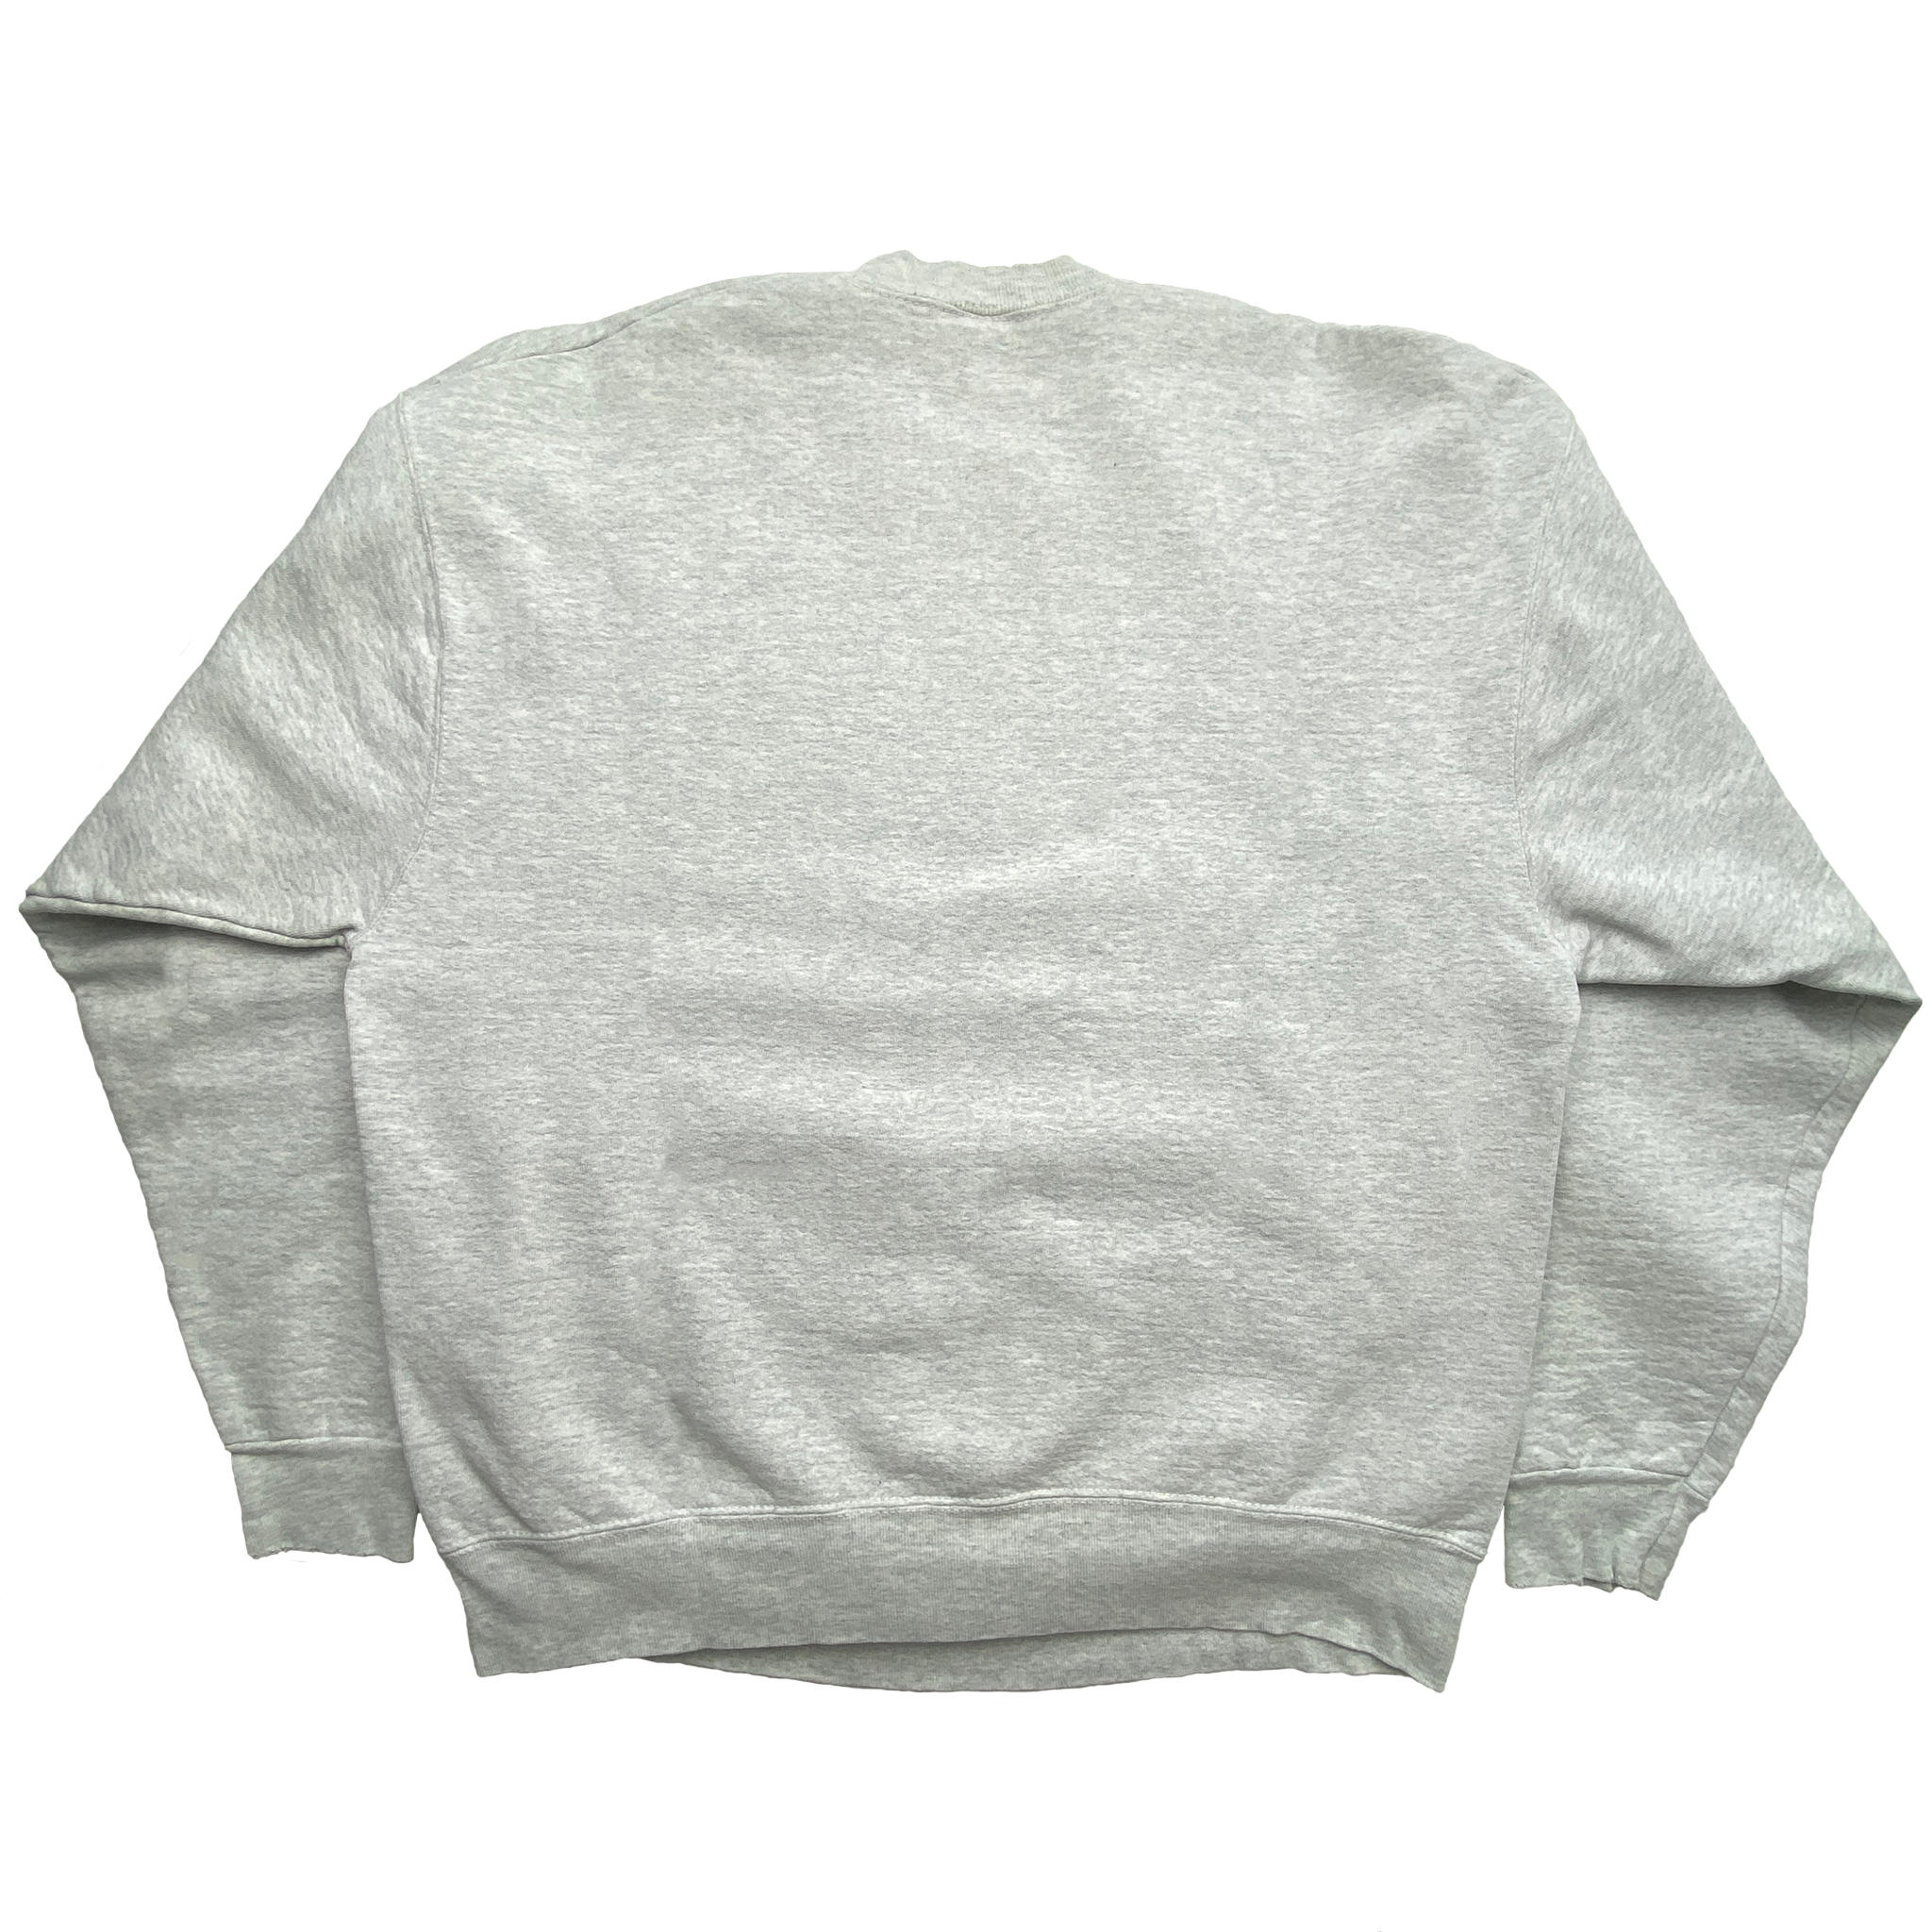 Swanville Patriots Sweatshirt (XL)